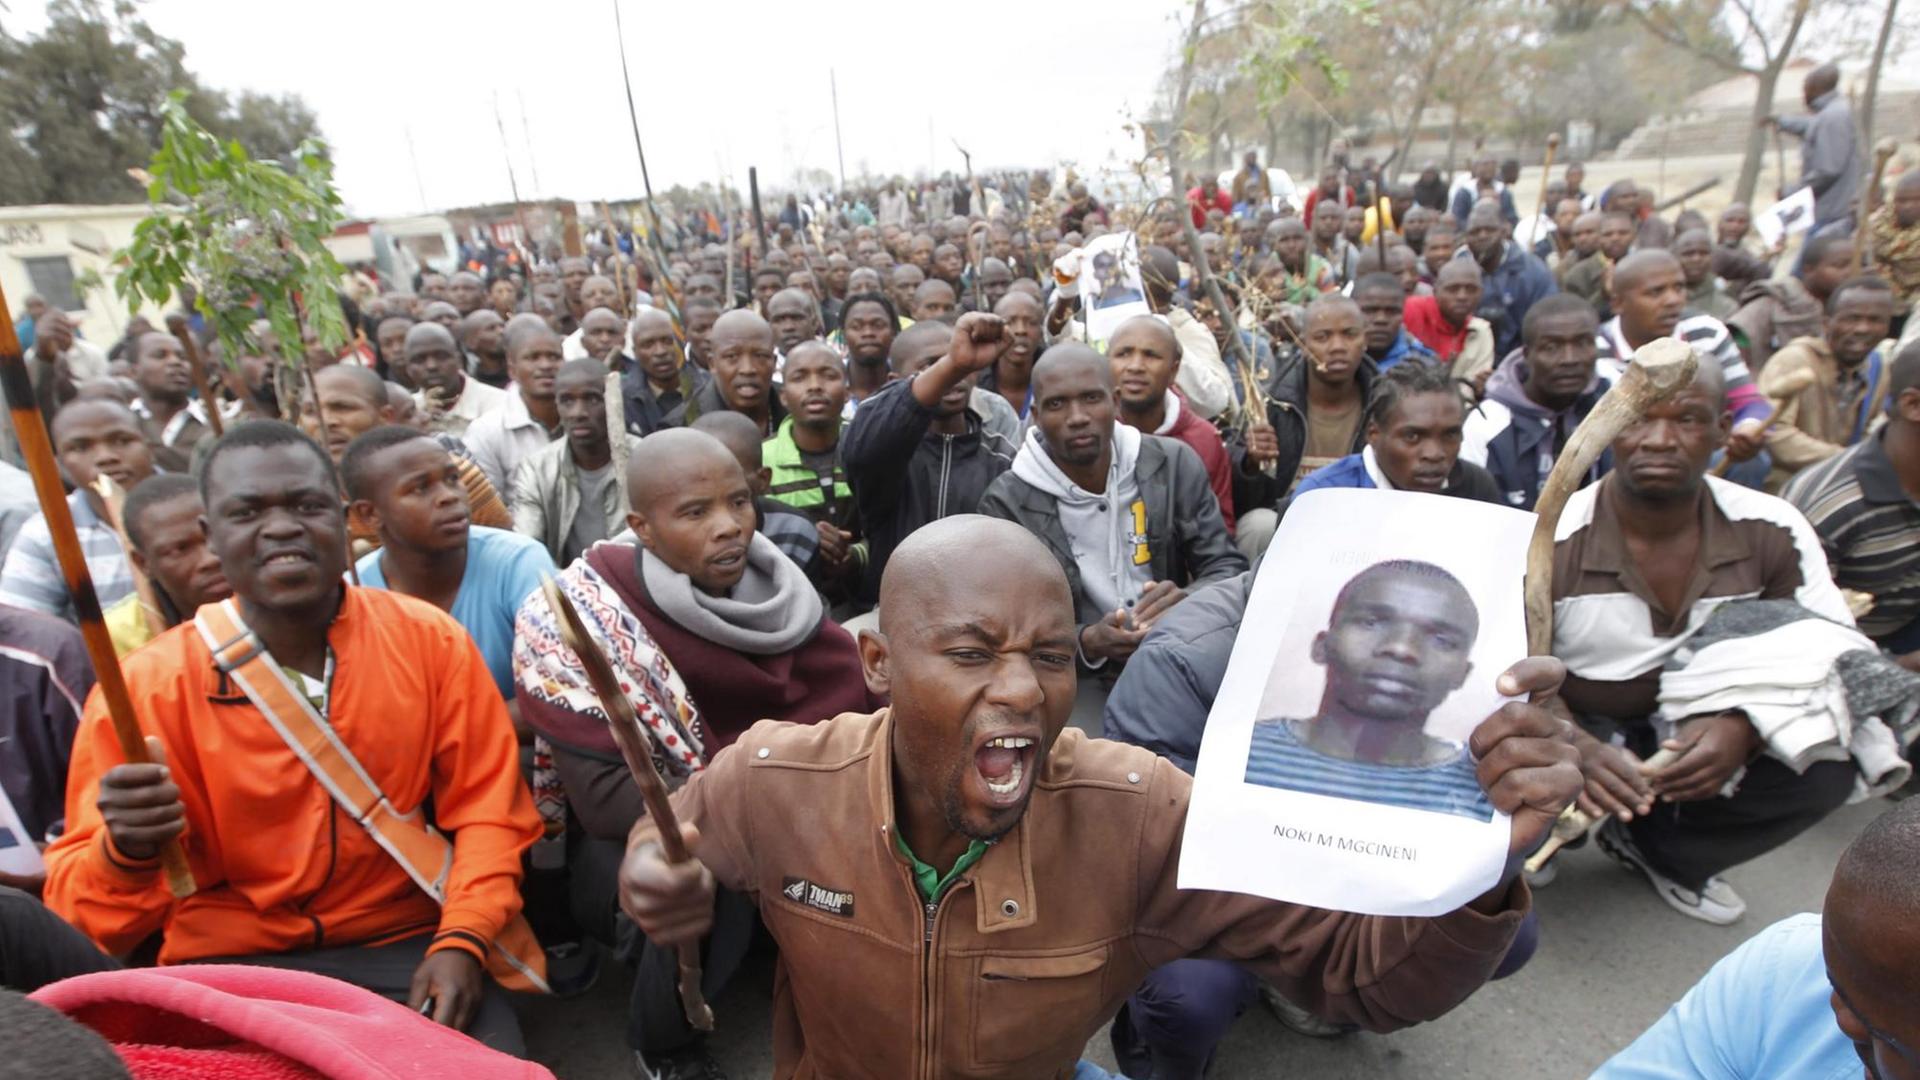 Eine große Menge afrikanischer Männer im Sitzstreik - im Vordergrund hält ein schreiender Mann das großformatige Foto eines jungen Mannes hoch, - es ist eines deerTodesopfer der blutigen Niederschlagung des Bergarbeiterstreiks südafrikanischen Marikanas